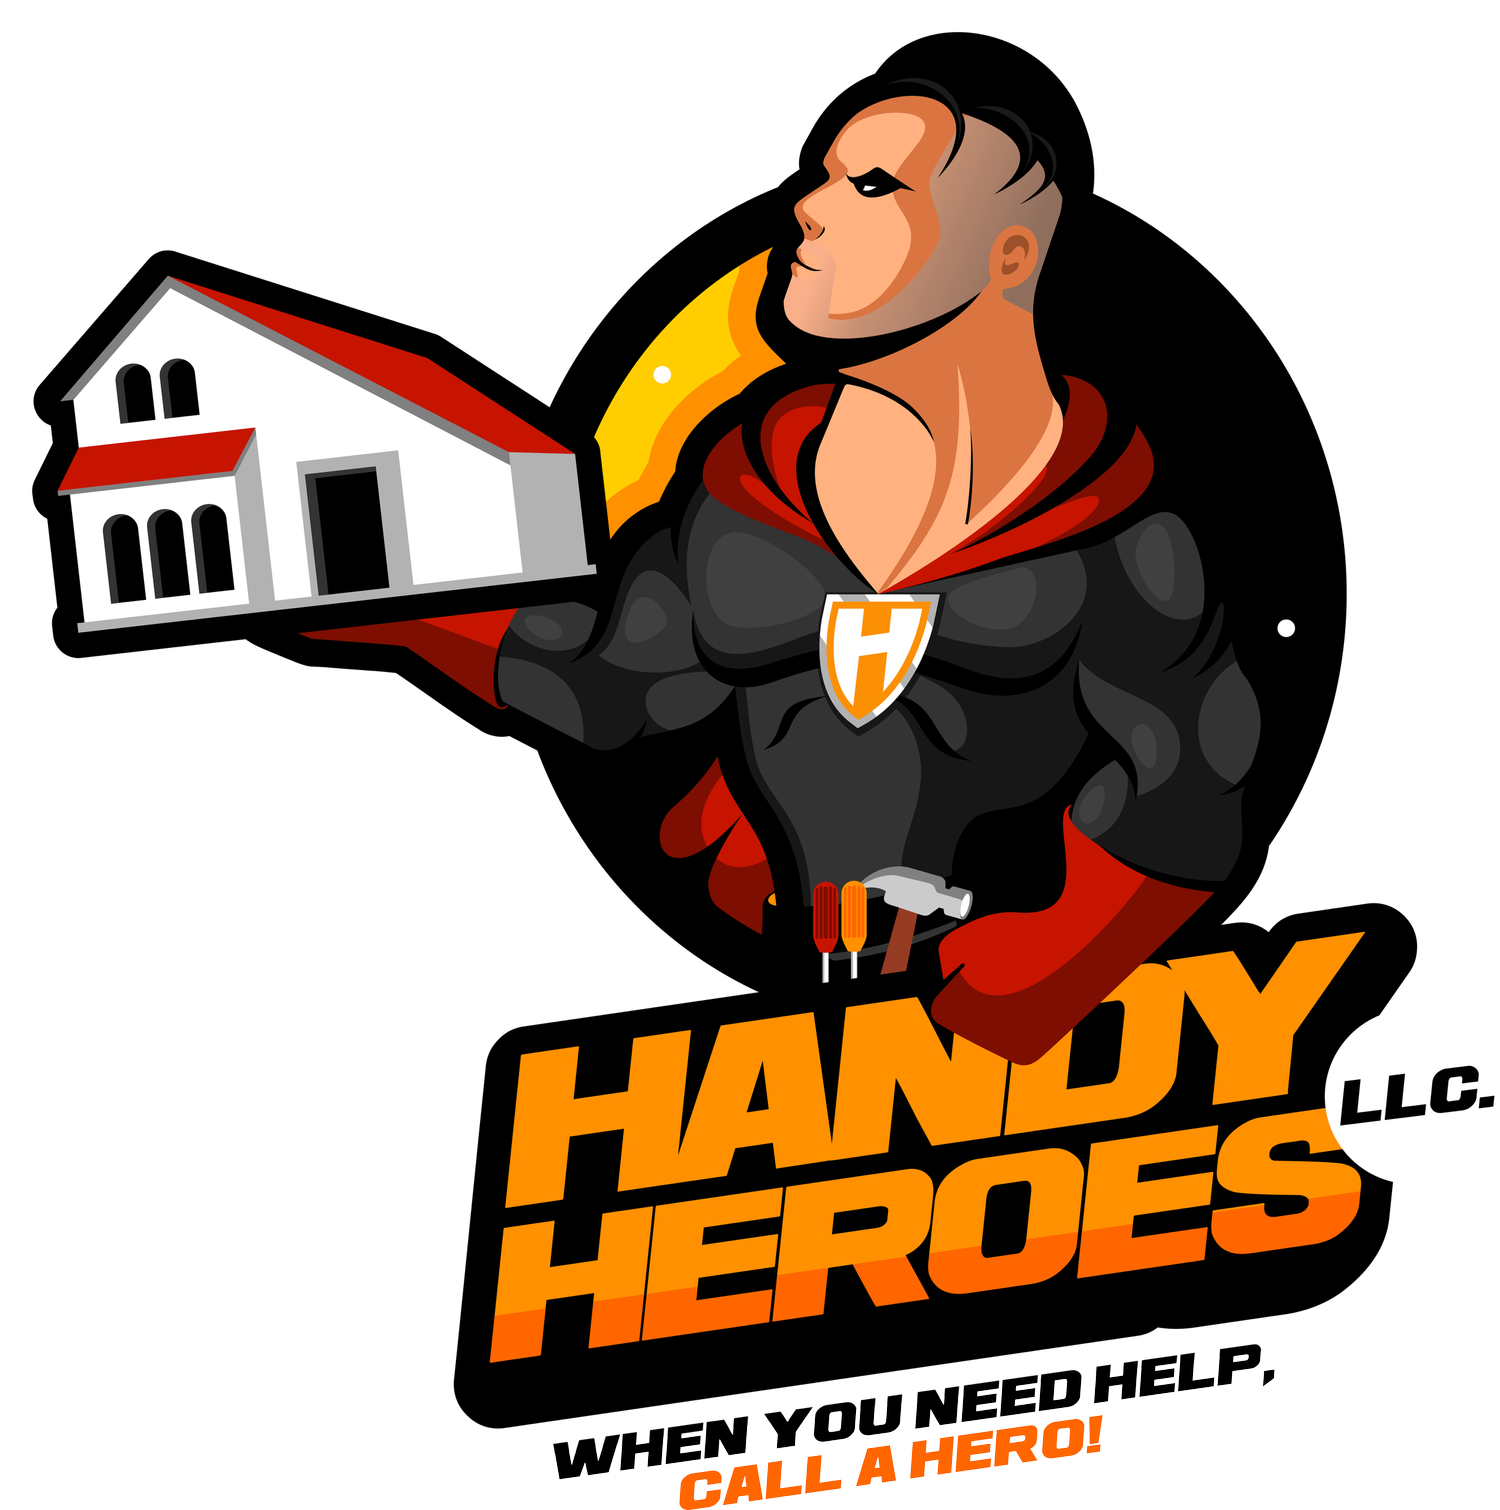 Handy Heroes LLC.